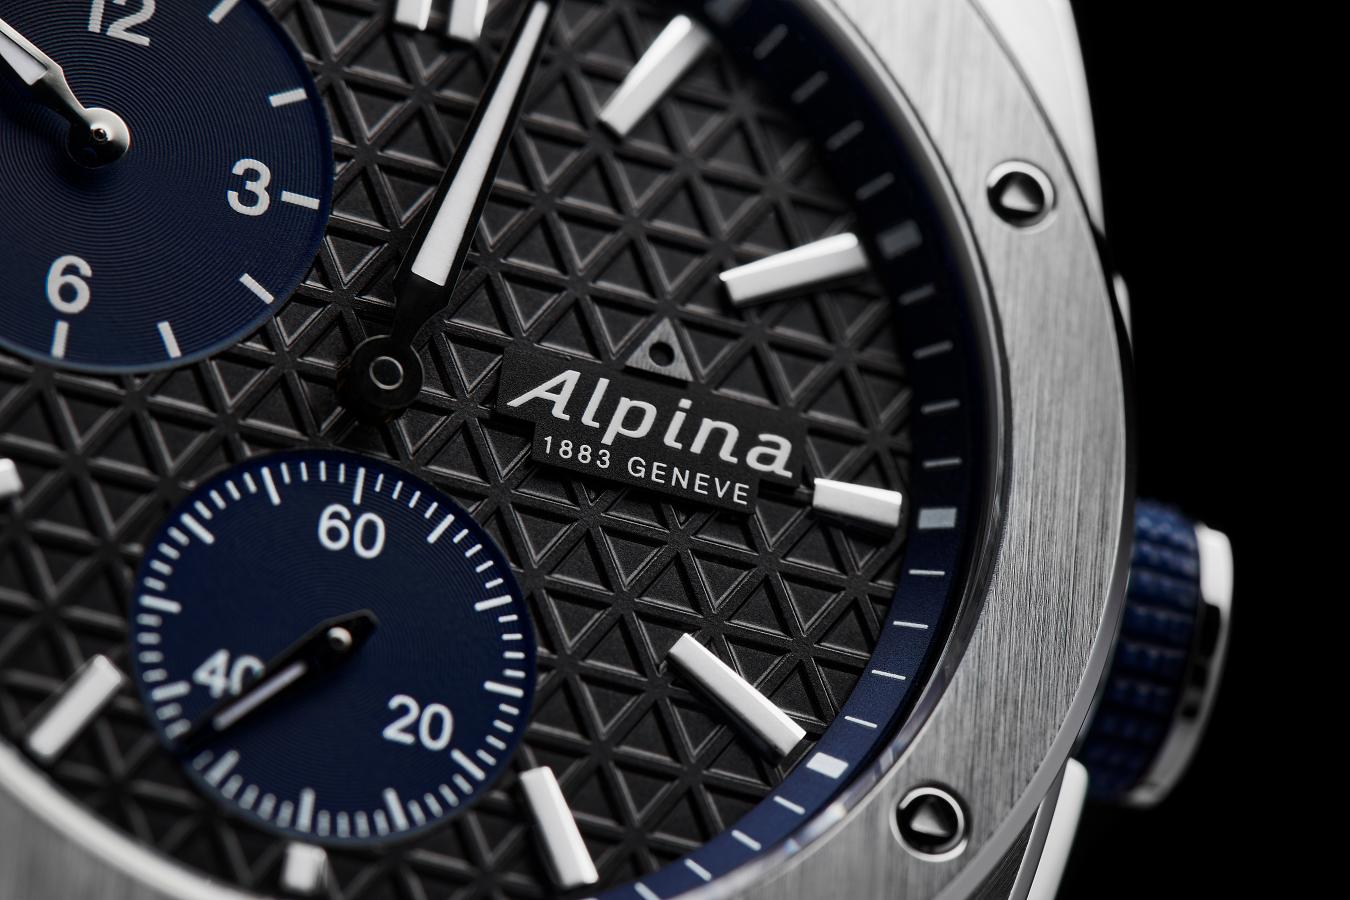 Wielki powrót po latach! Alpina Alpiner Extreme Regulator Automatic